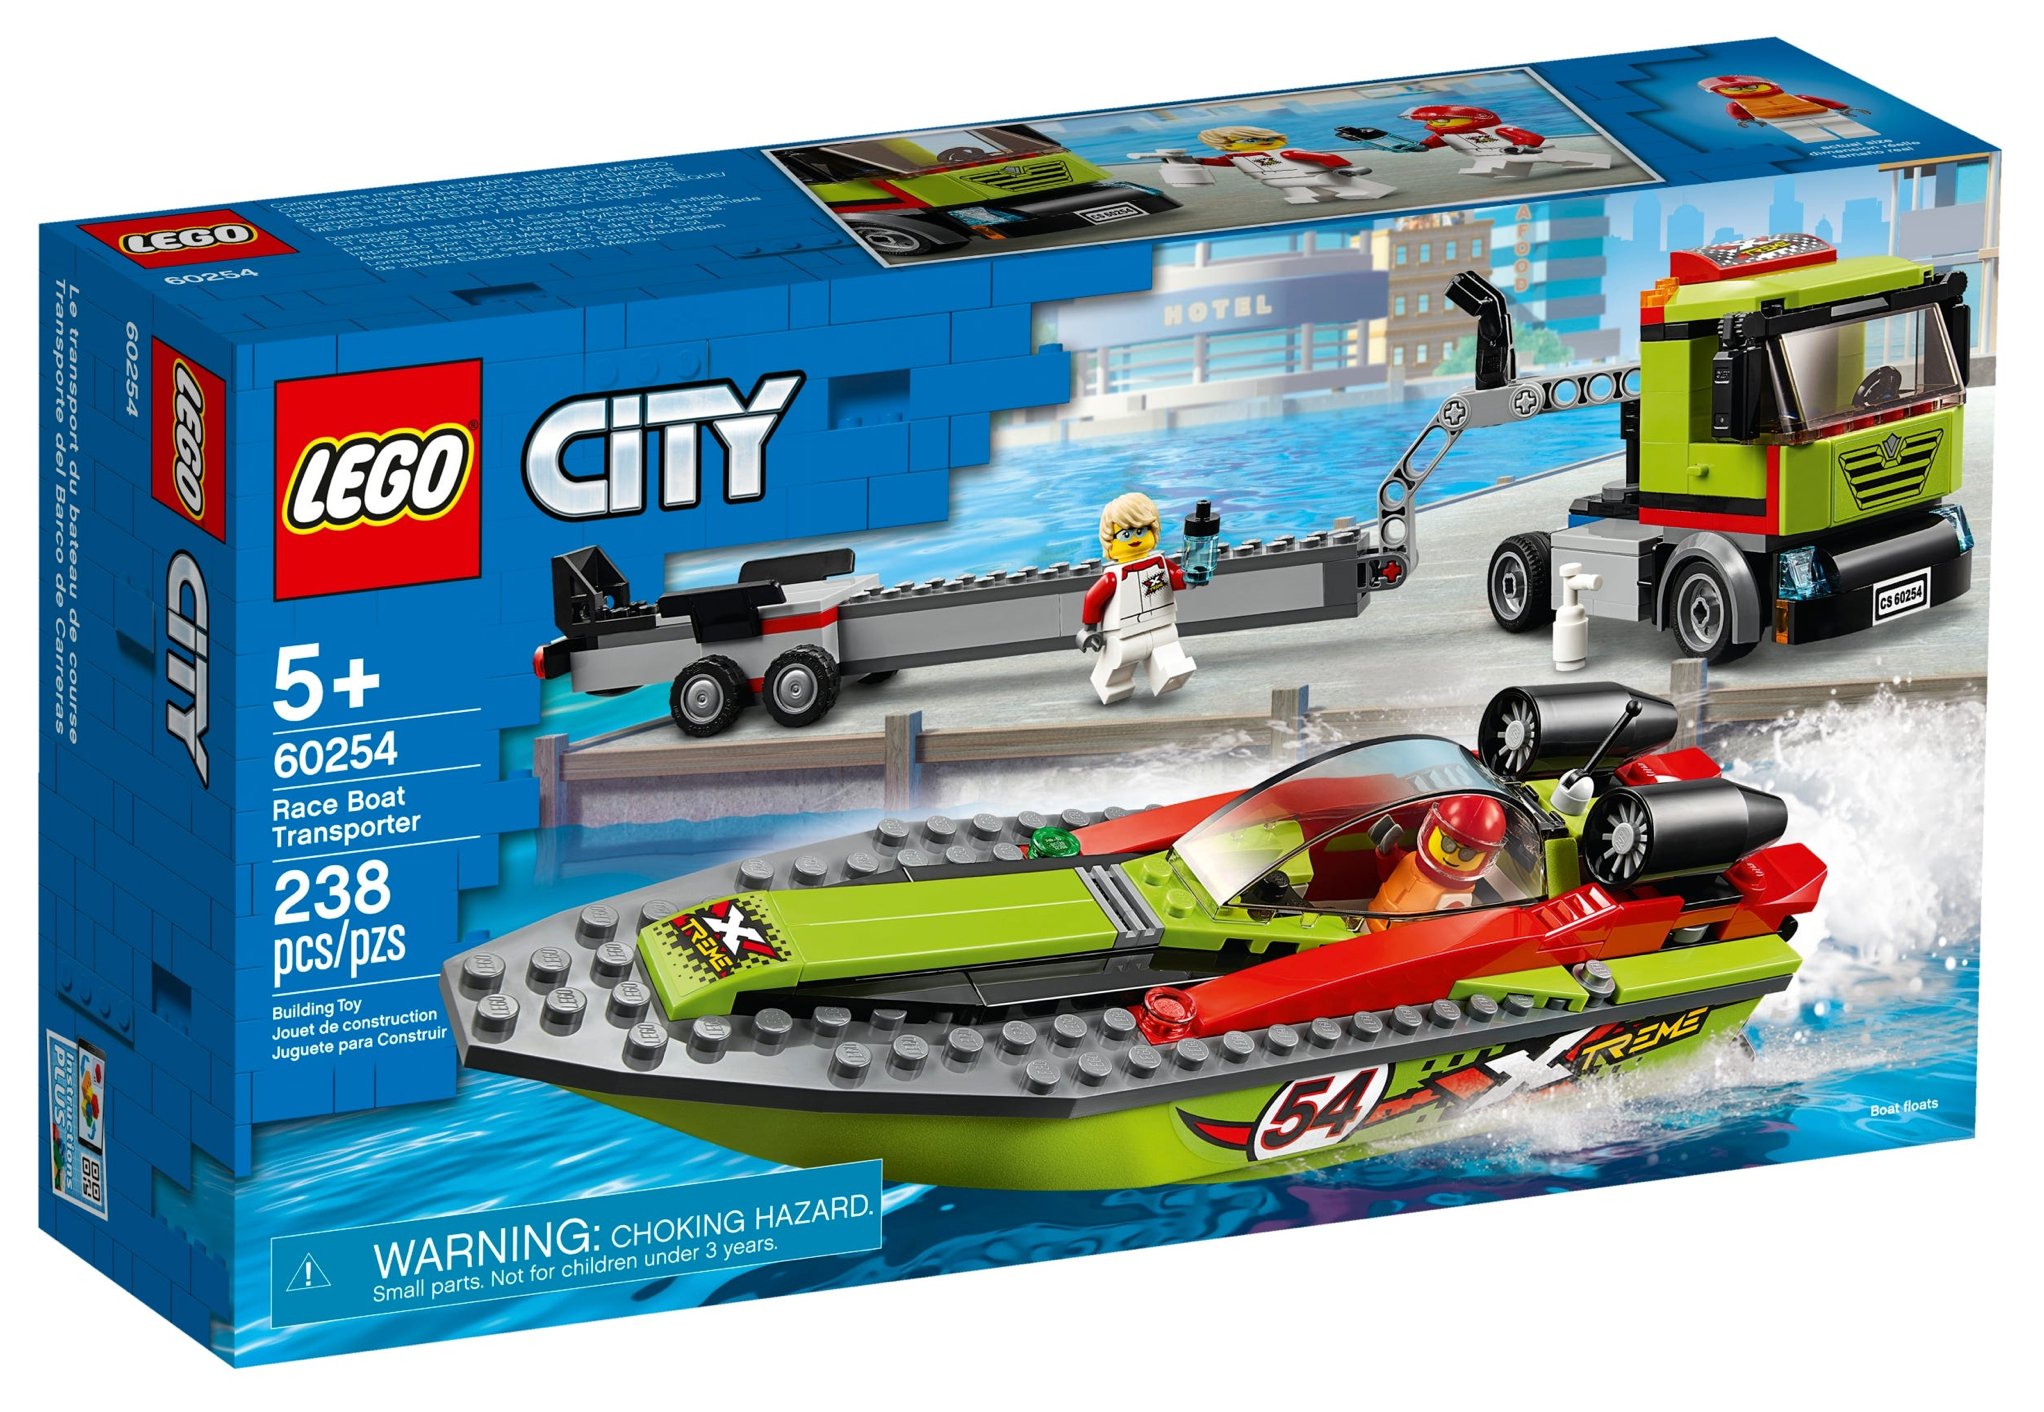 LEGO: City - Race Boat Transporter